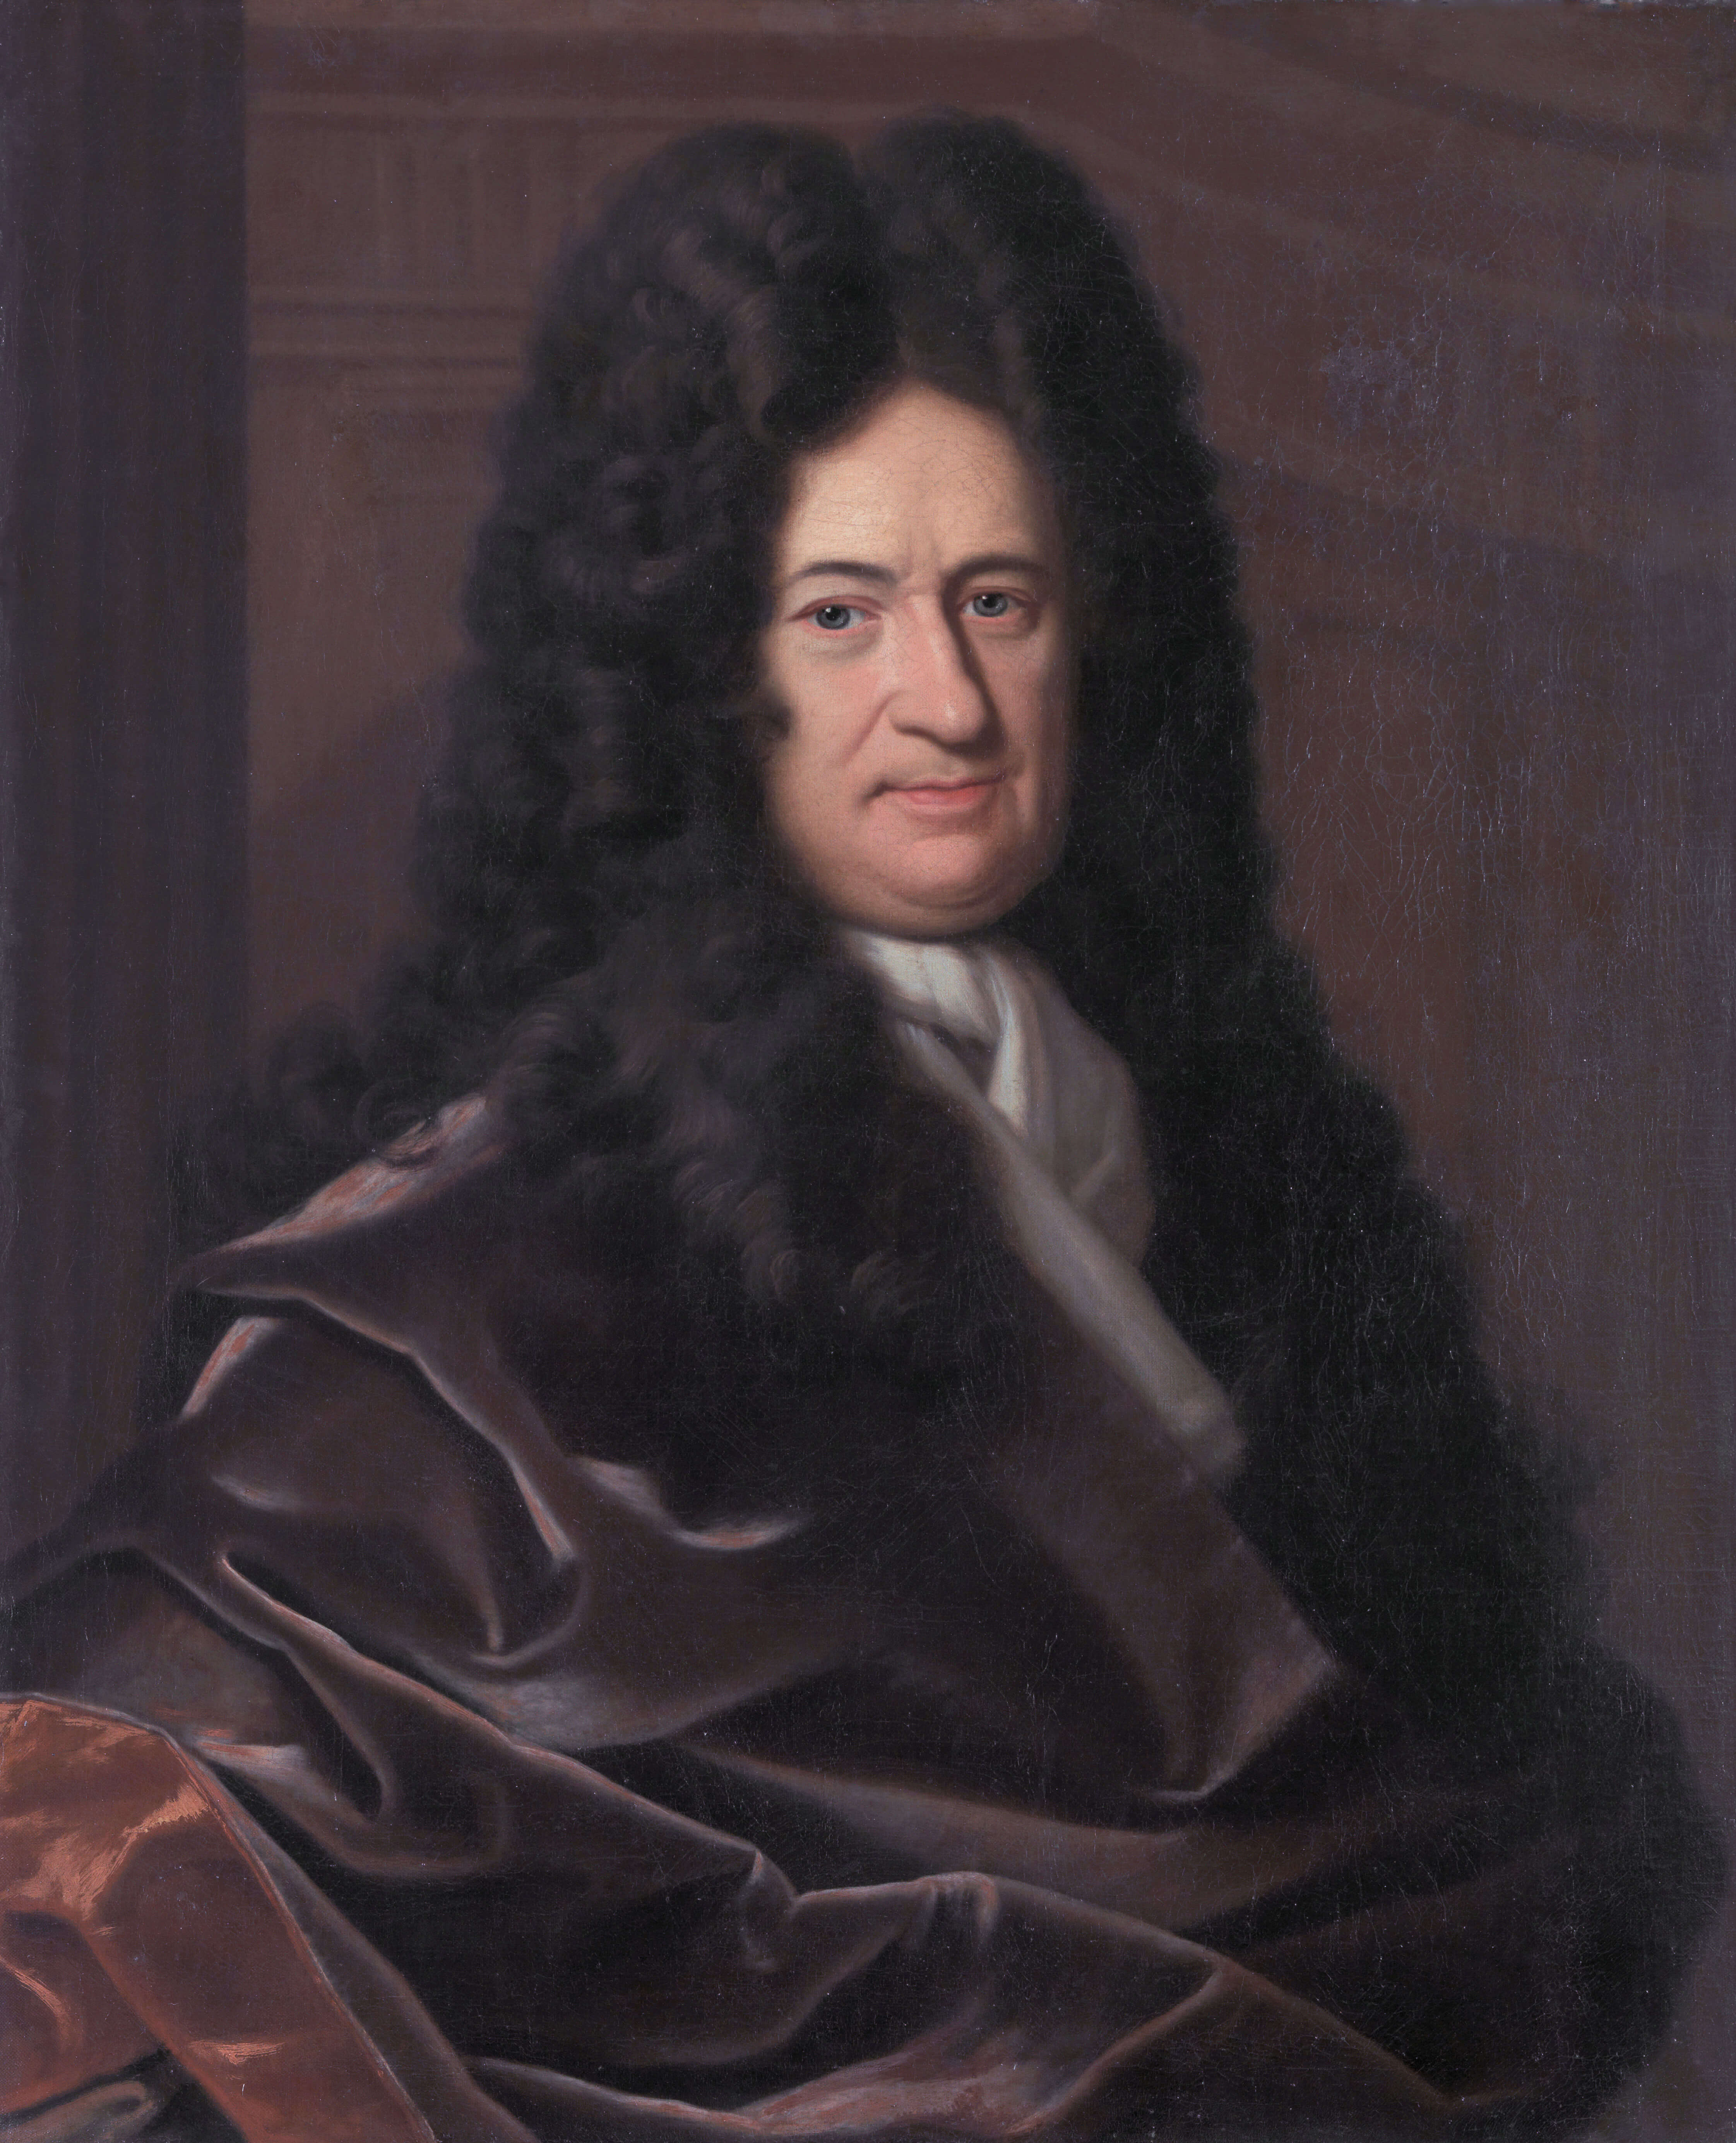 Слика 6. Готфрид Вилхем Лајбниц (1646–1716), немачки филозоф, Кристоф Бернард Франке, пре 1729. (Herzog Anton Ulrich-Museum, Брауншвајг).